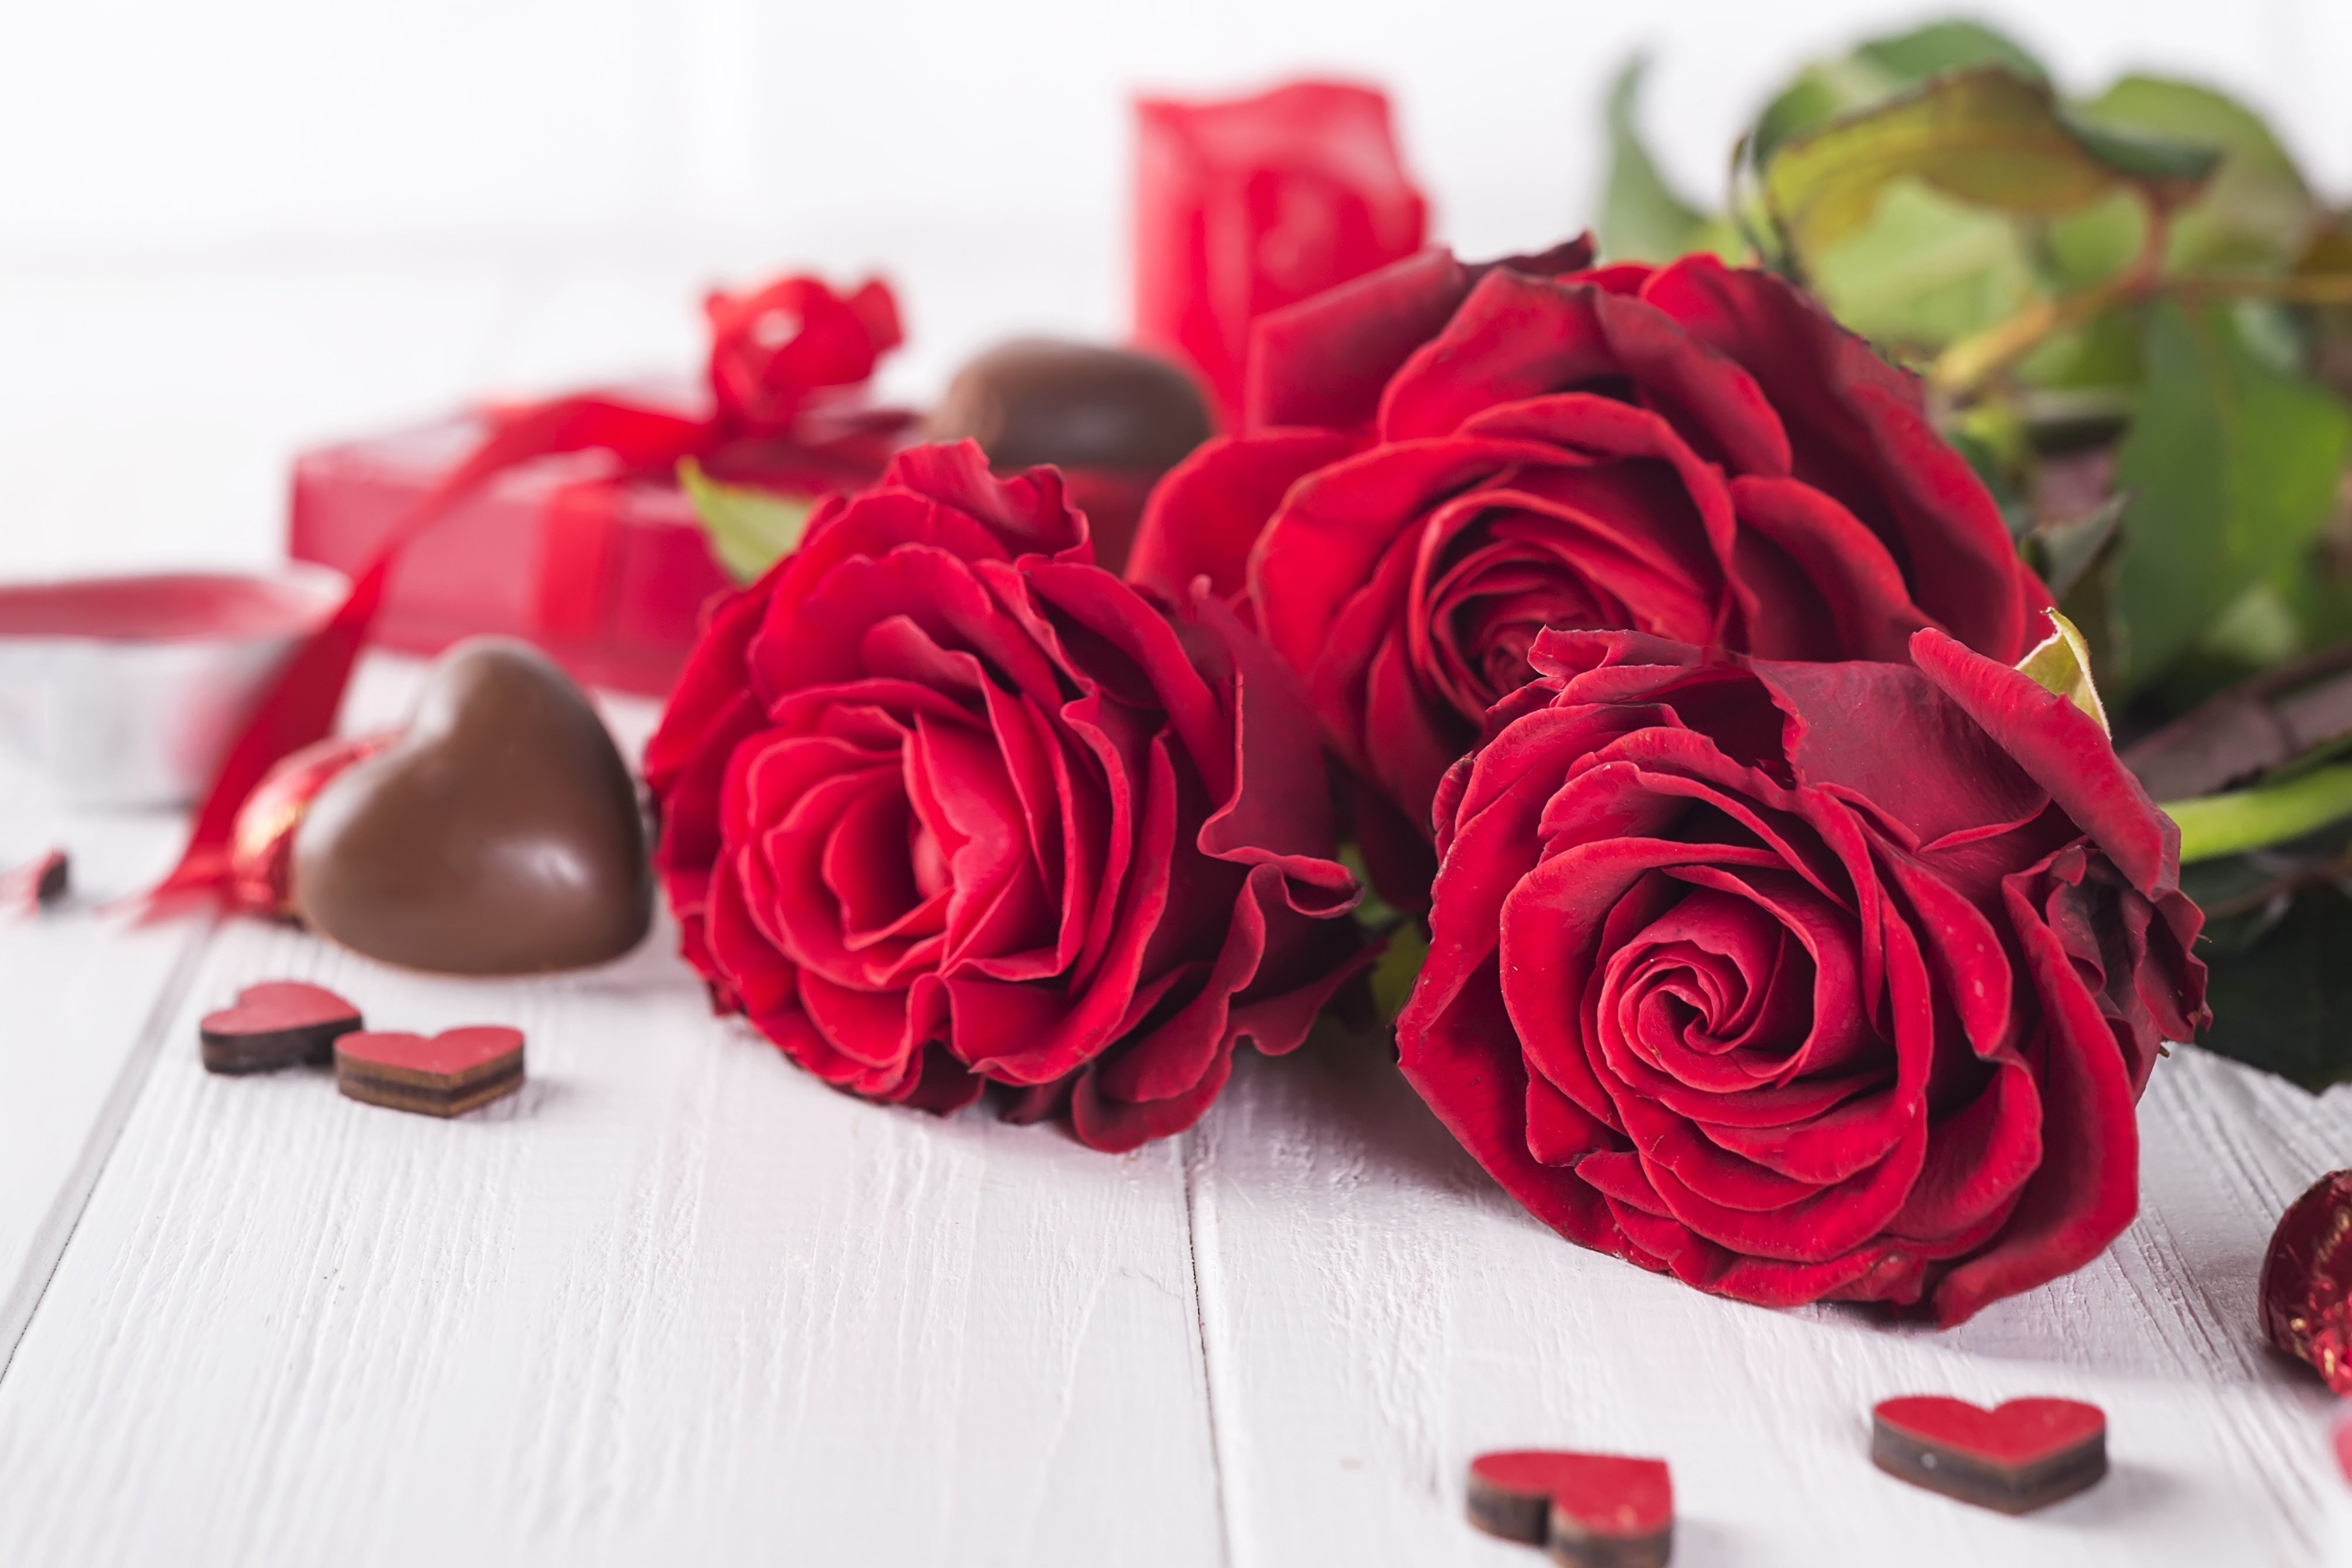 Скачать обои бесплатно Шоколад, Натюрморт, Цветок, Роза, День Святого Валентина, Праздничные, Красный Цветок картинка на рабочий стол ПК